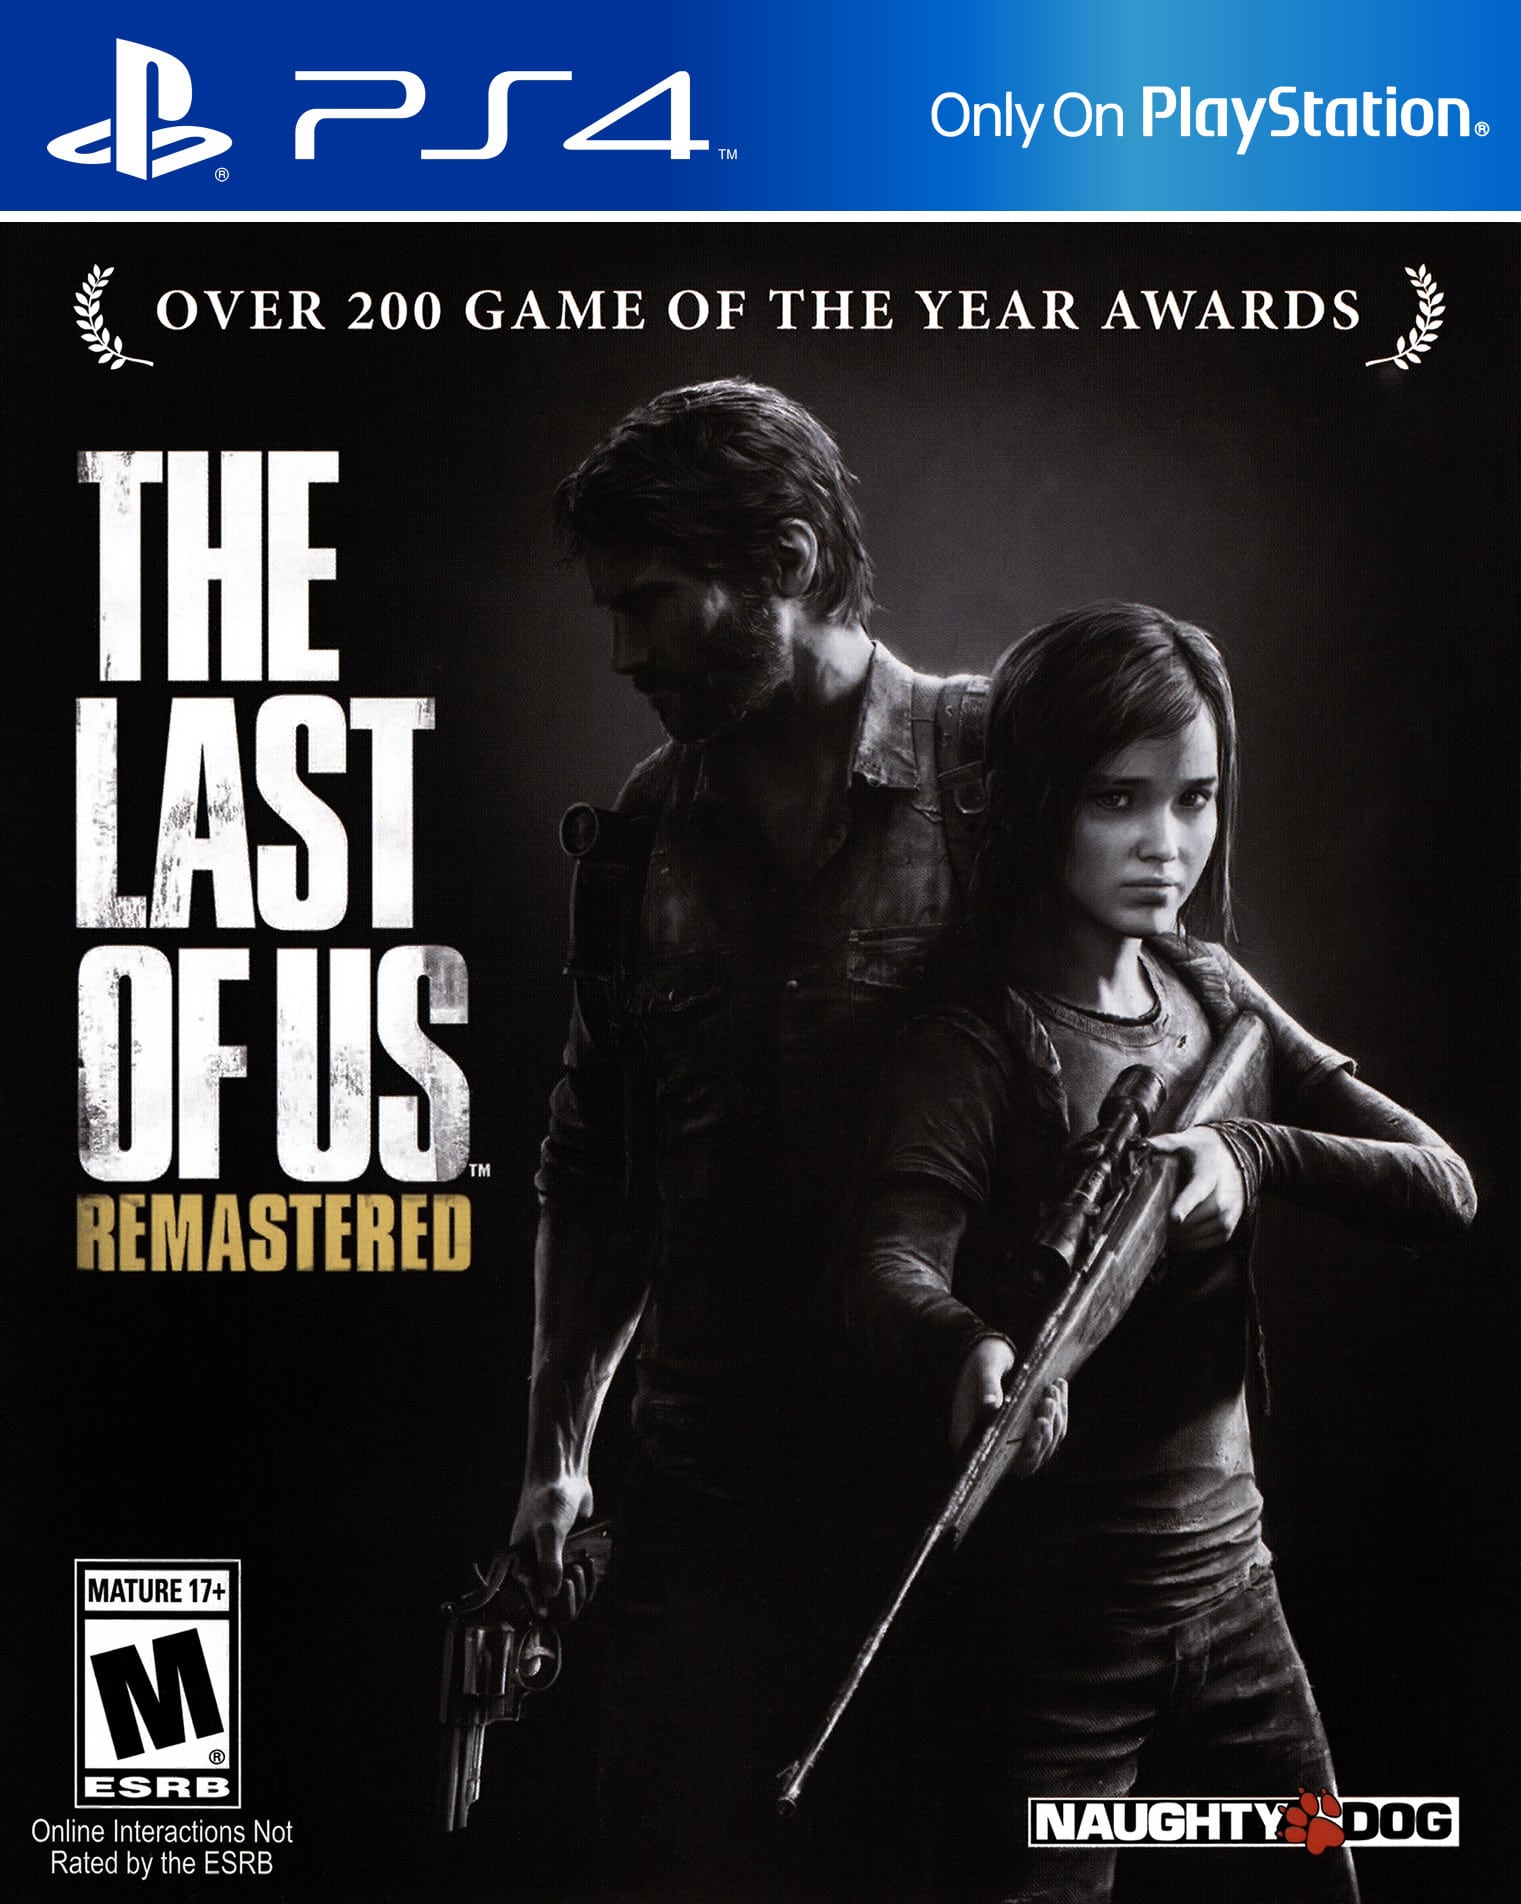 The Last of Us, um dos grandes sucessos do PS3, foi remasterizado no PS4